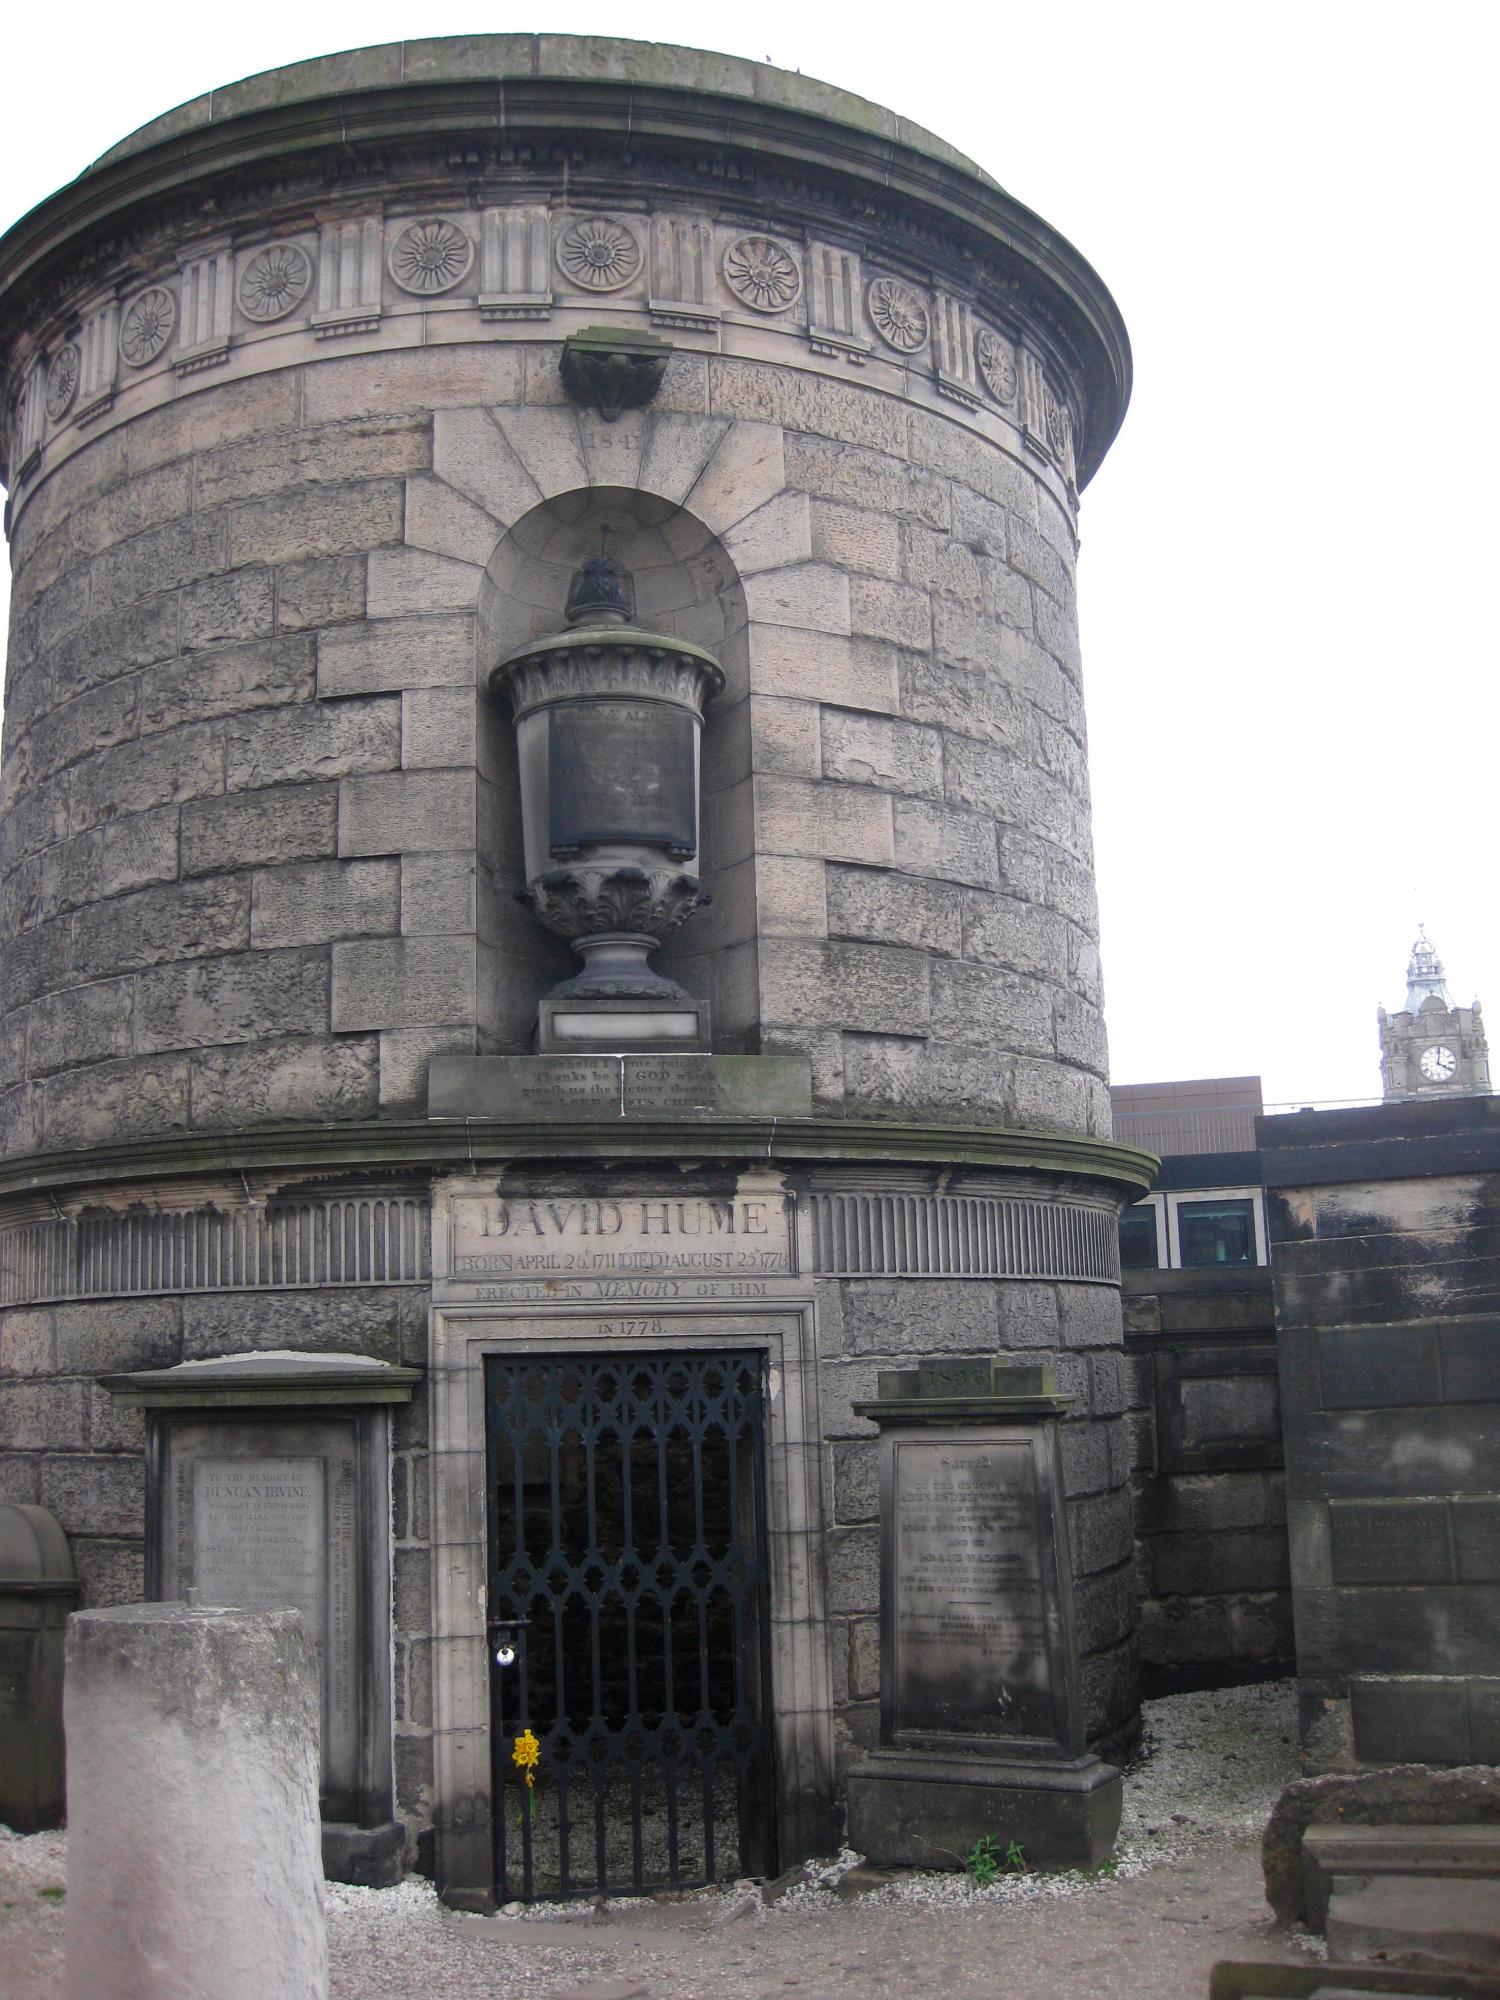 Tumba del filósofo David Hume, en el cementerio de Old Calton en Edimburgo.